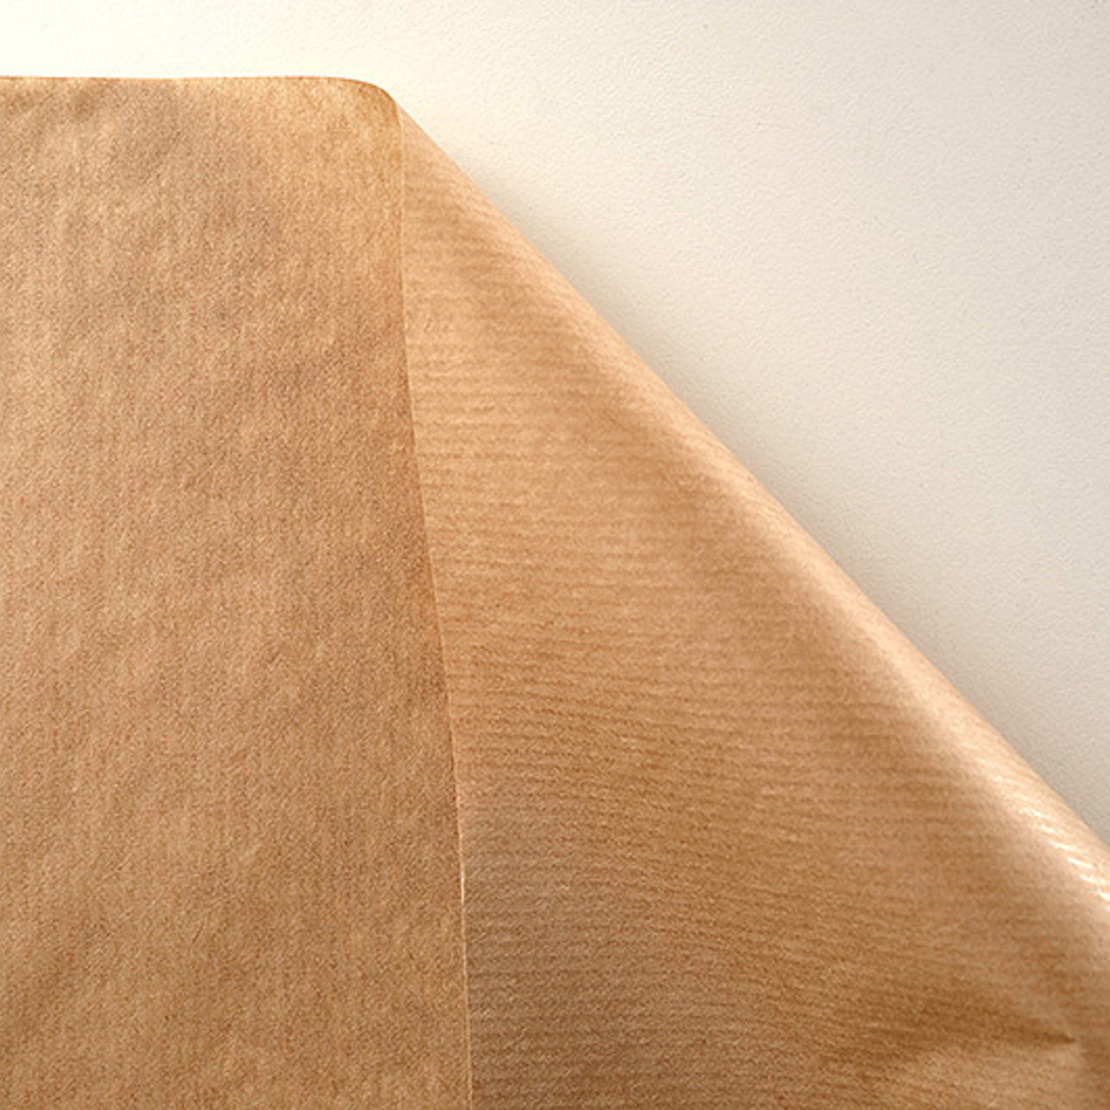 ribbed brown paper